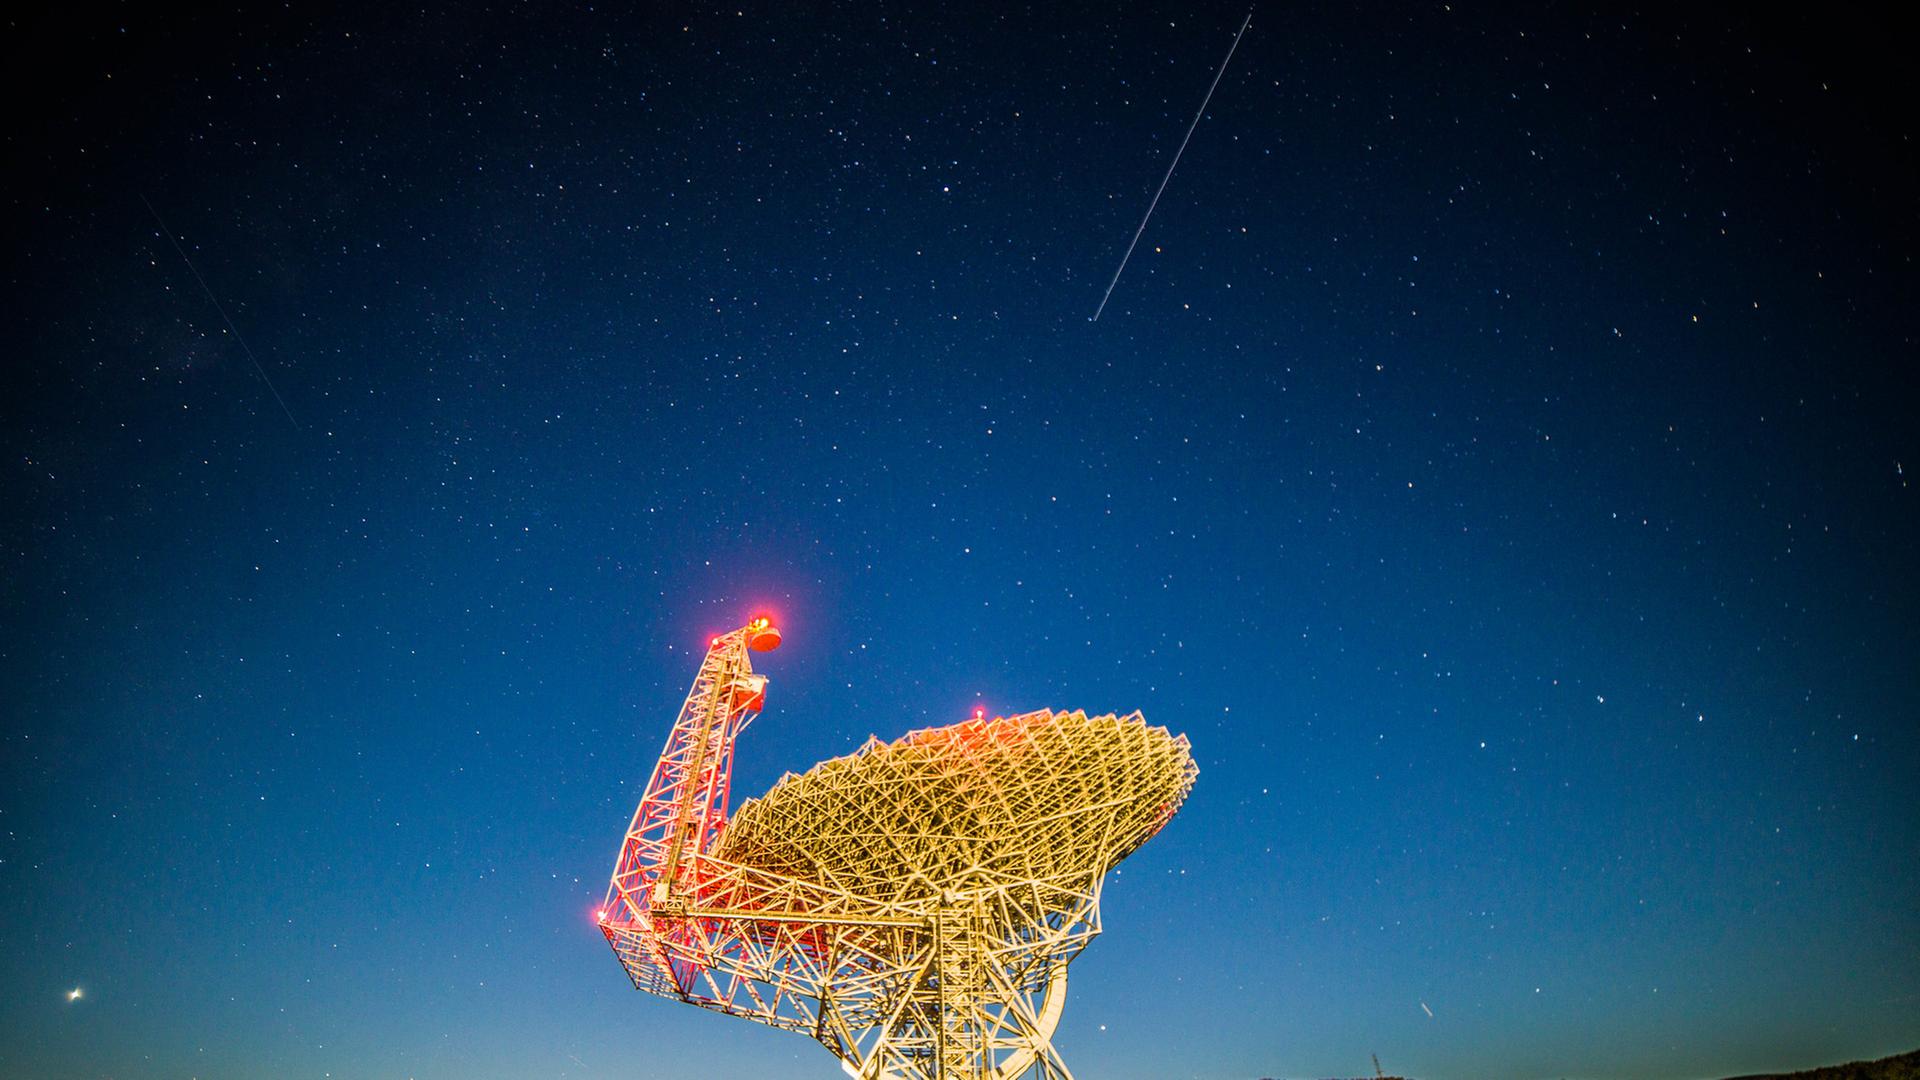 Das Green-Bank-Teleskop in West Virigina bei Nacht - am Himmel zeigt sich eine Satellitenspur.